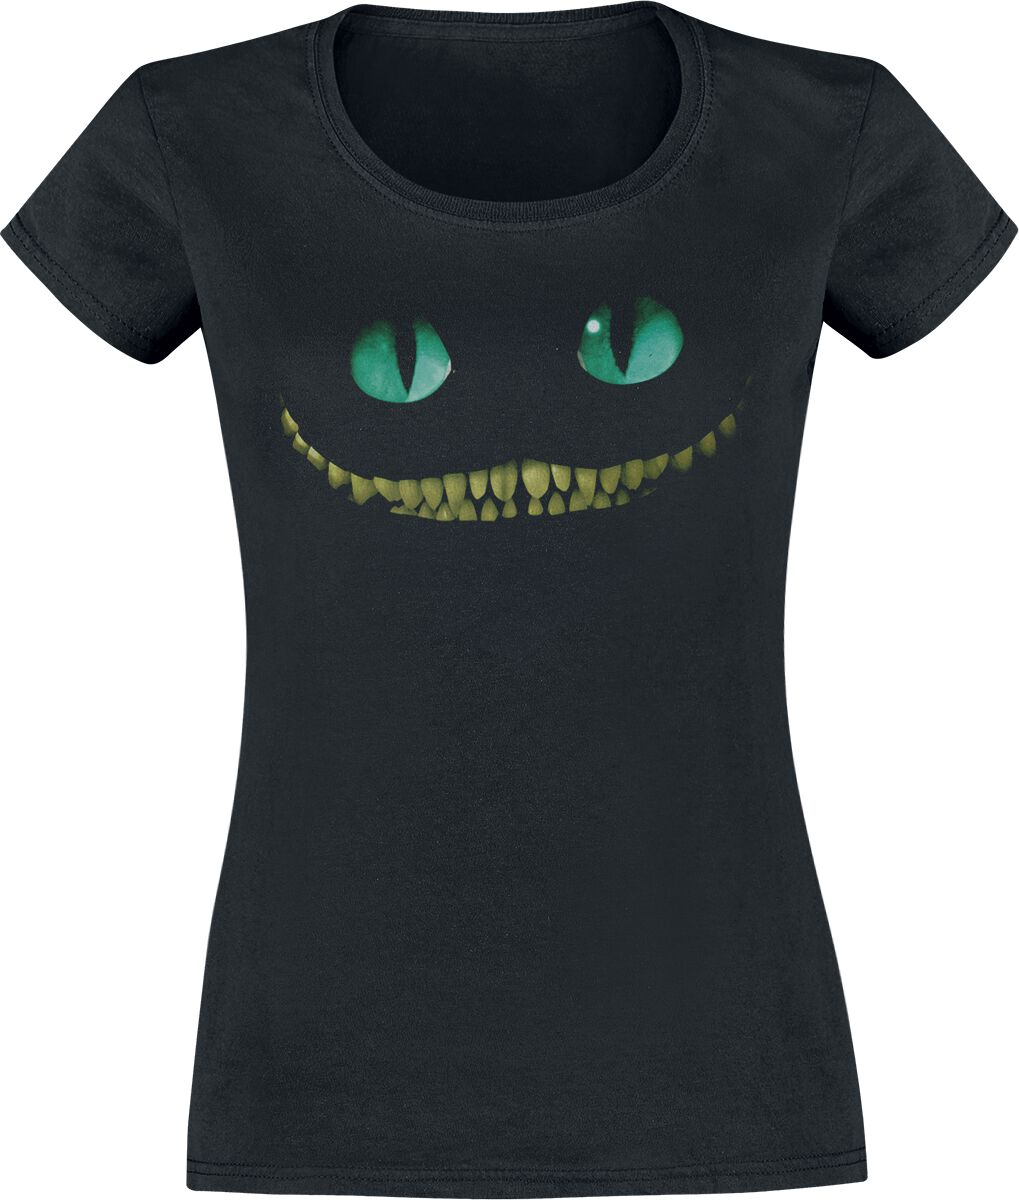 Alice im Wunderland - Disney T-Shirt - Grinsekatze - Lächeln - XS bis XXL - für Damen - Größe XL - schwarz  - Lizenziert